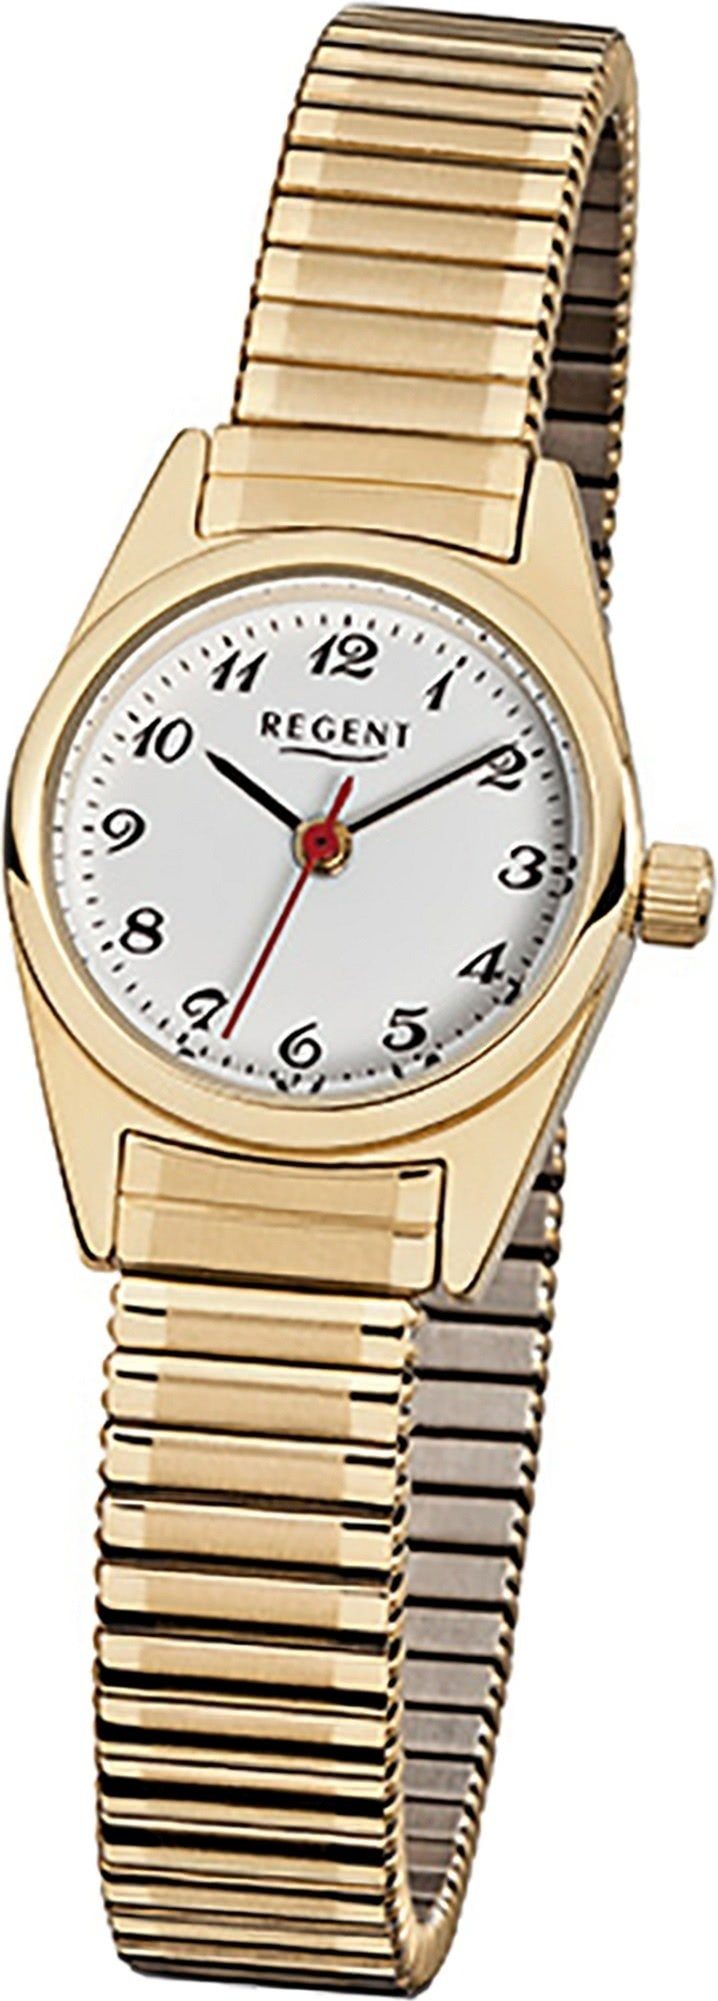 Regent Quarzuhr Regent Stahl Damen Uhr F-271 Quarzuhr, Damenuhr Edelstahl, ionenplattiert rundes Gehäuse, klein (ca. 22mm)